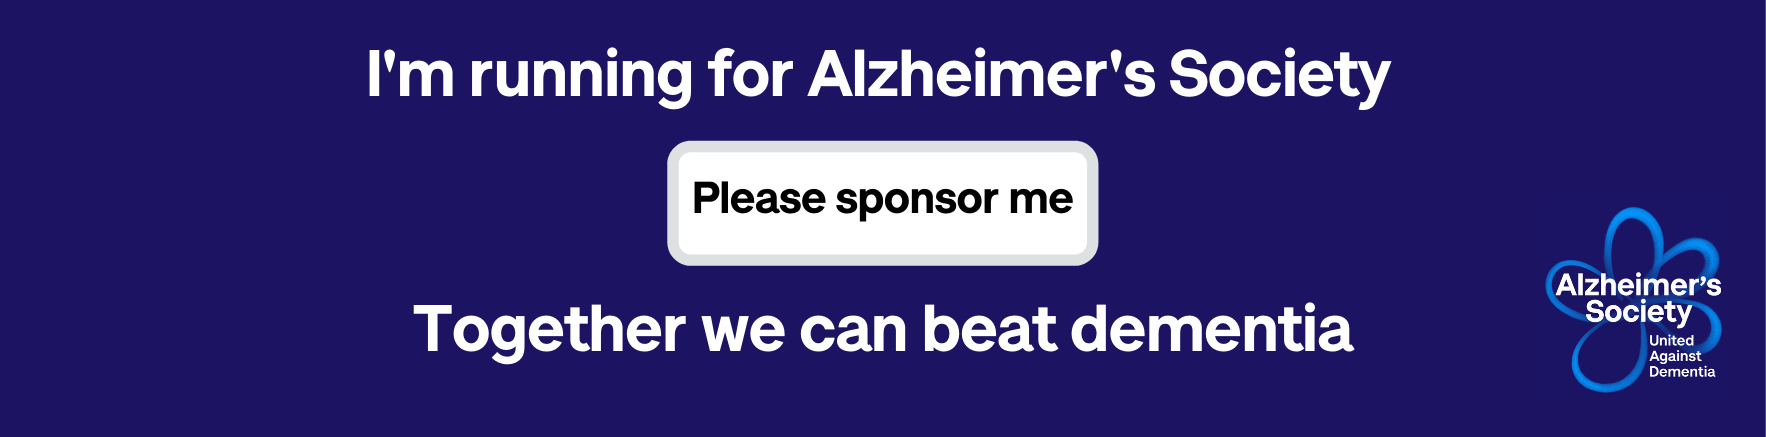 I'm running for Alzheimer's Society sponsor me email banner